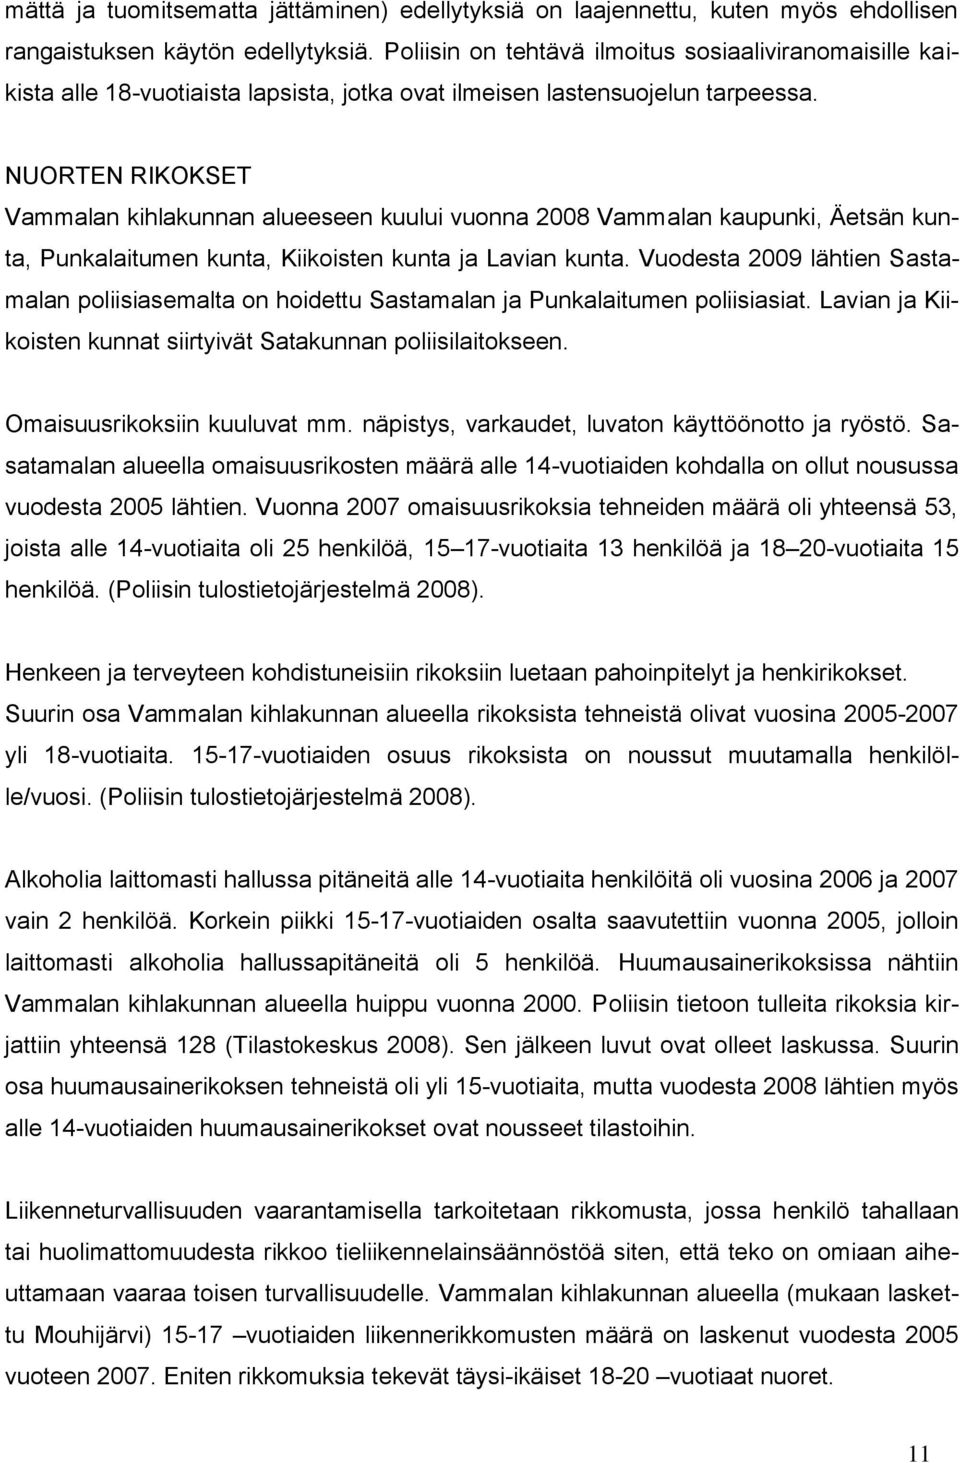 NUORTEN RIKOKSET Vammalan kihlakunnan alueeseen kuului vuonna 2008 Vammalan kaupunki, Äetsän kunta, Punkalaitumen kunta, Kiikoisten kunta ja Lavian kunta.